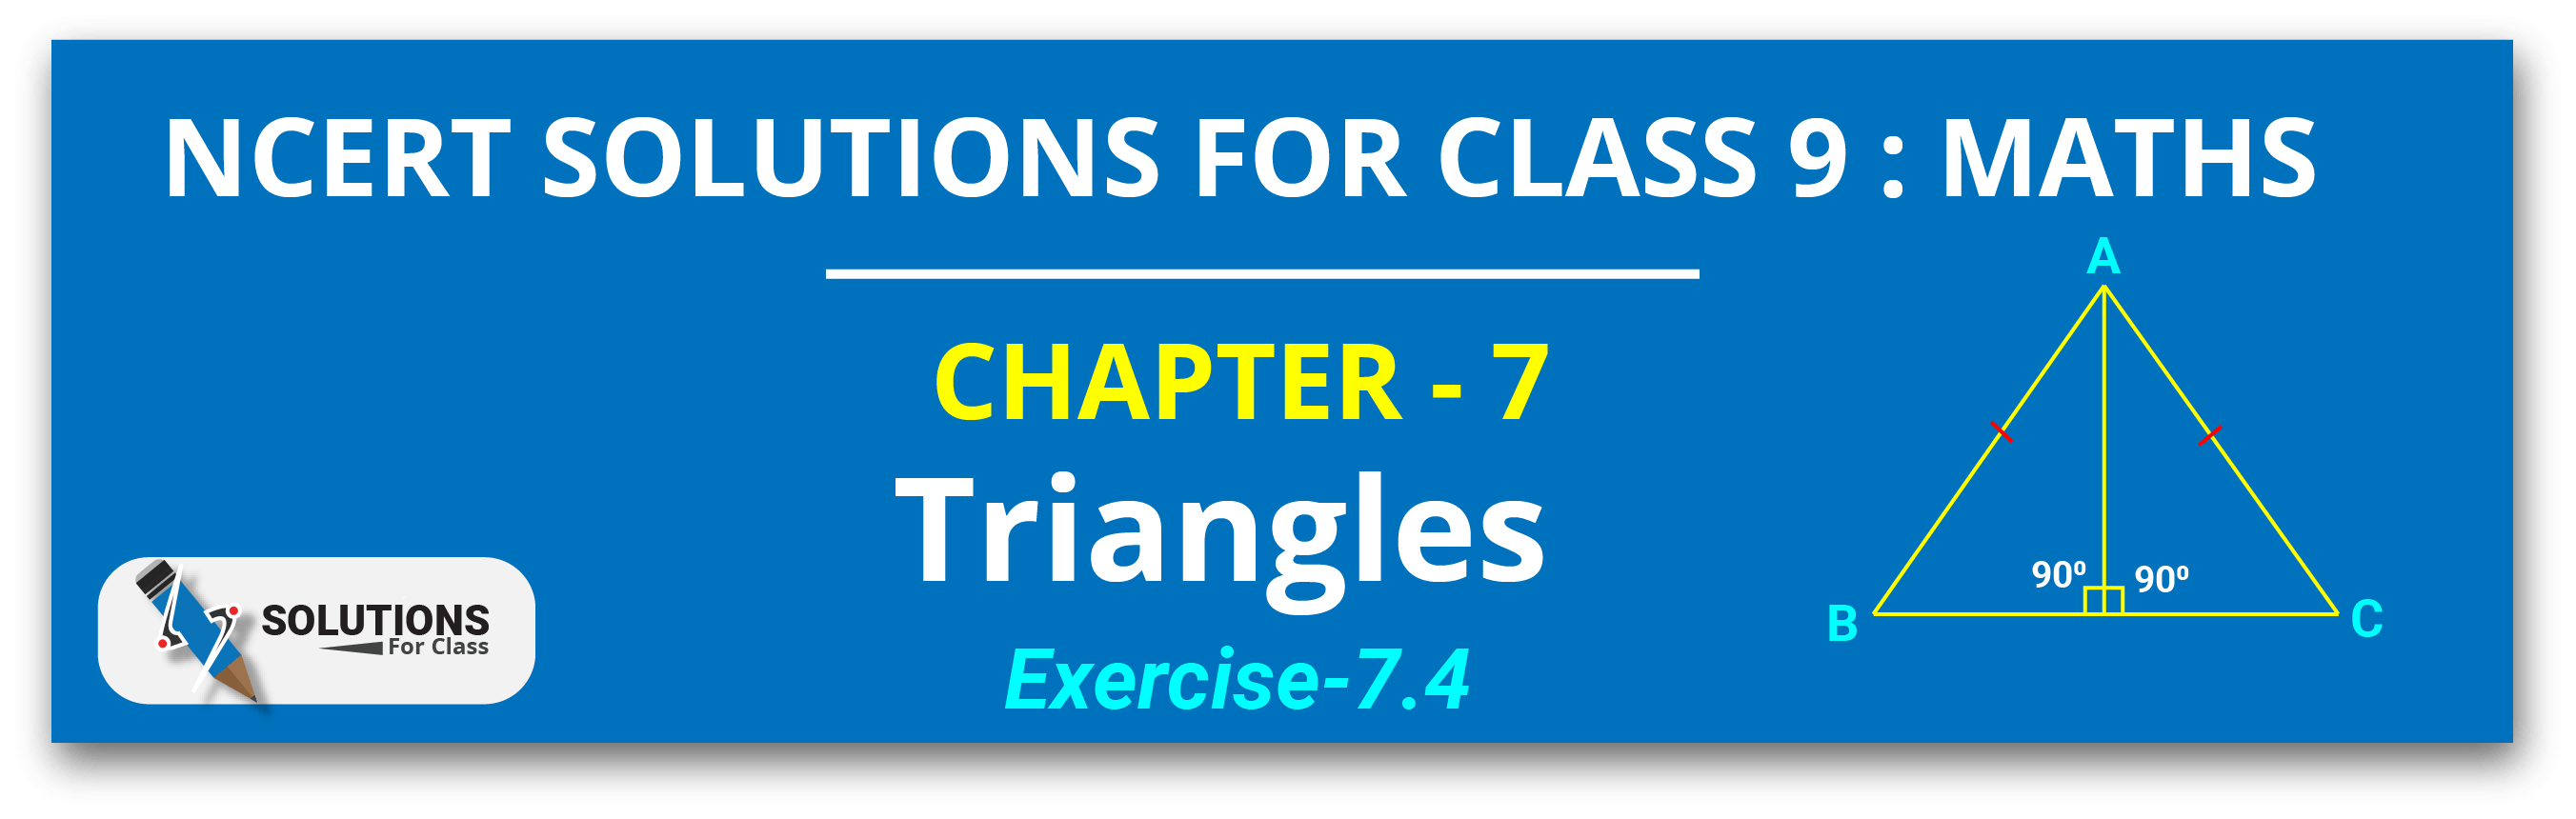 NCERT Solutions For Class 9, Maths, Chapter 7, Exe 7.4